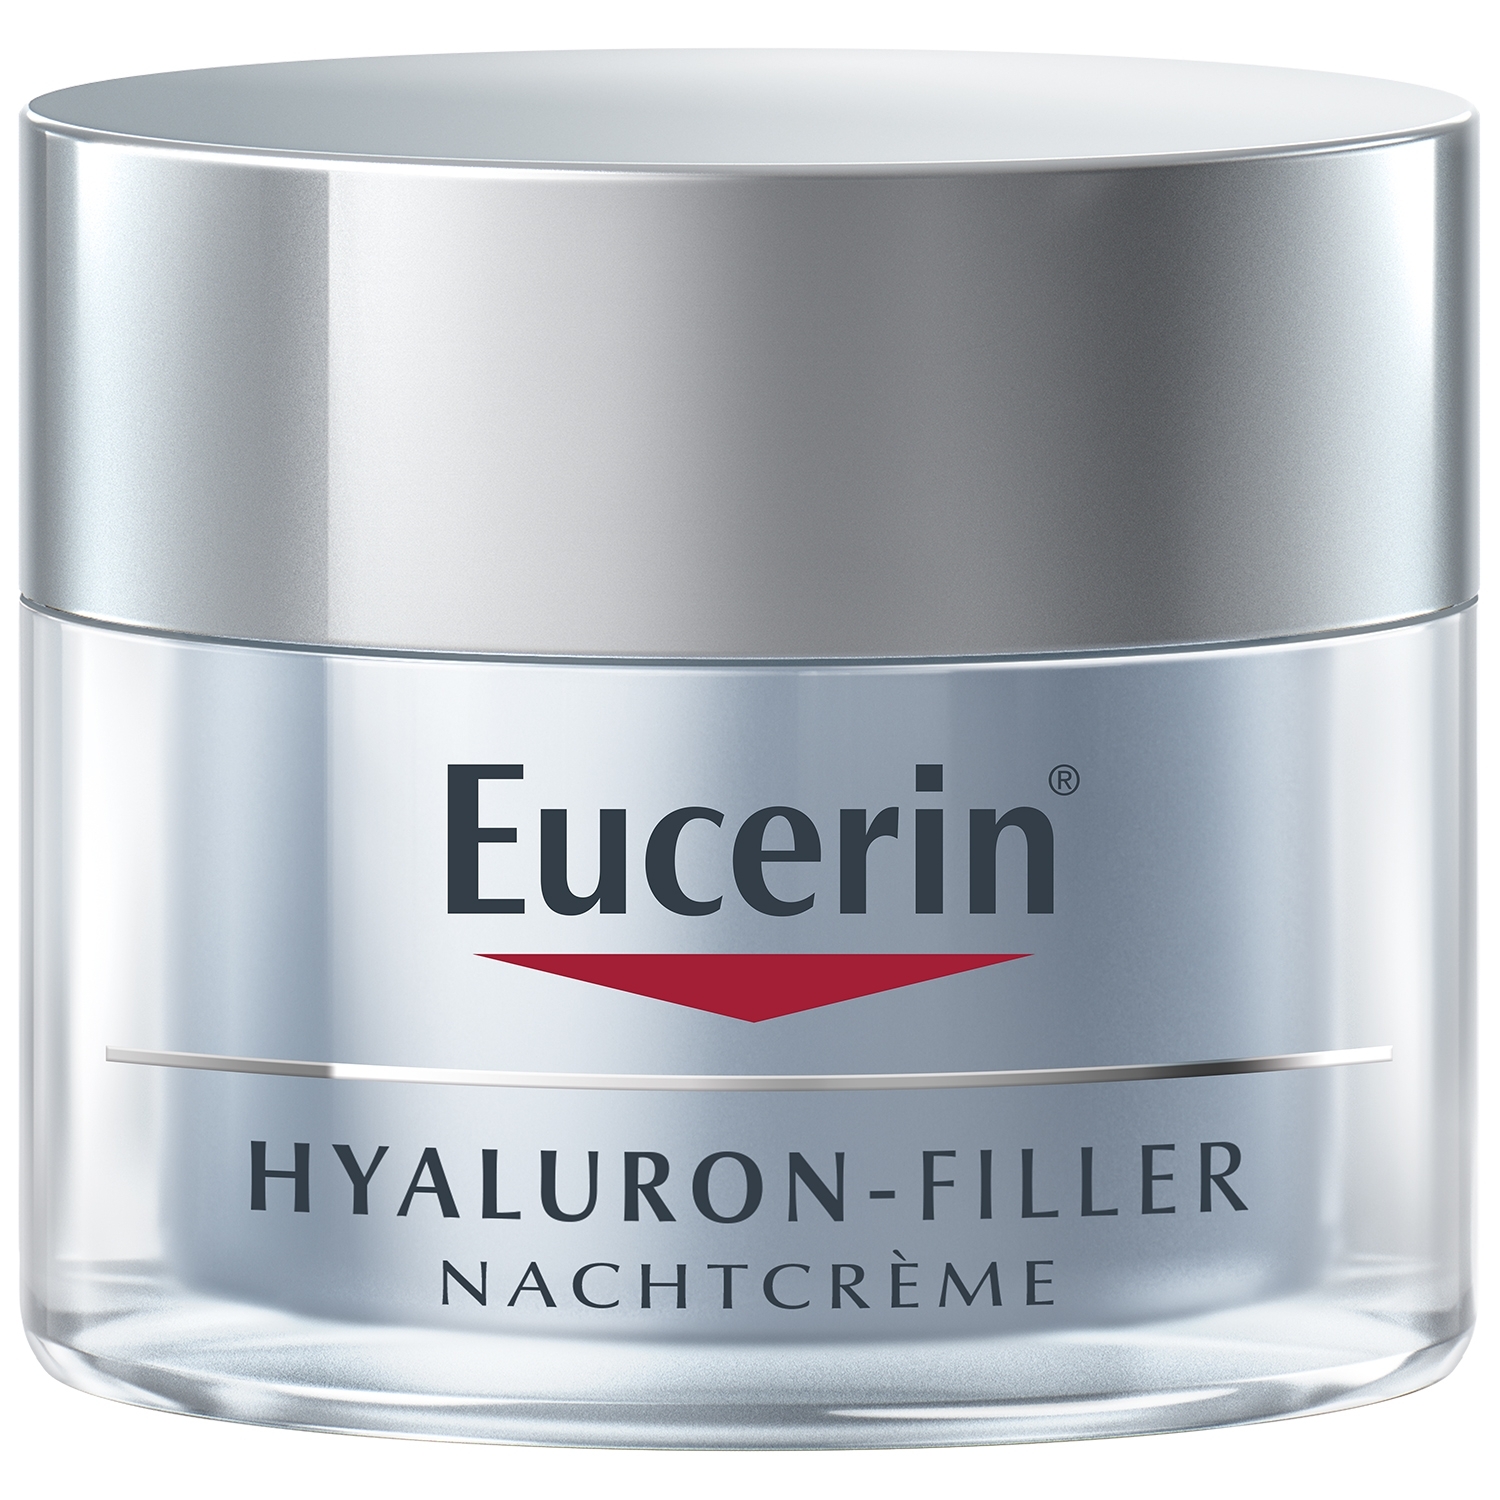 Eucerin Hyaluron-filler nuit - 50 ml